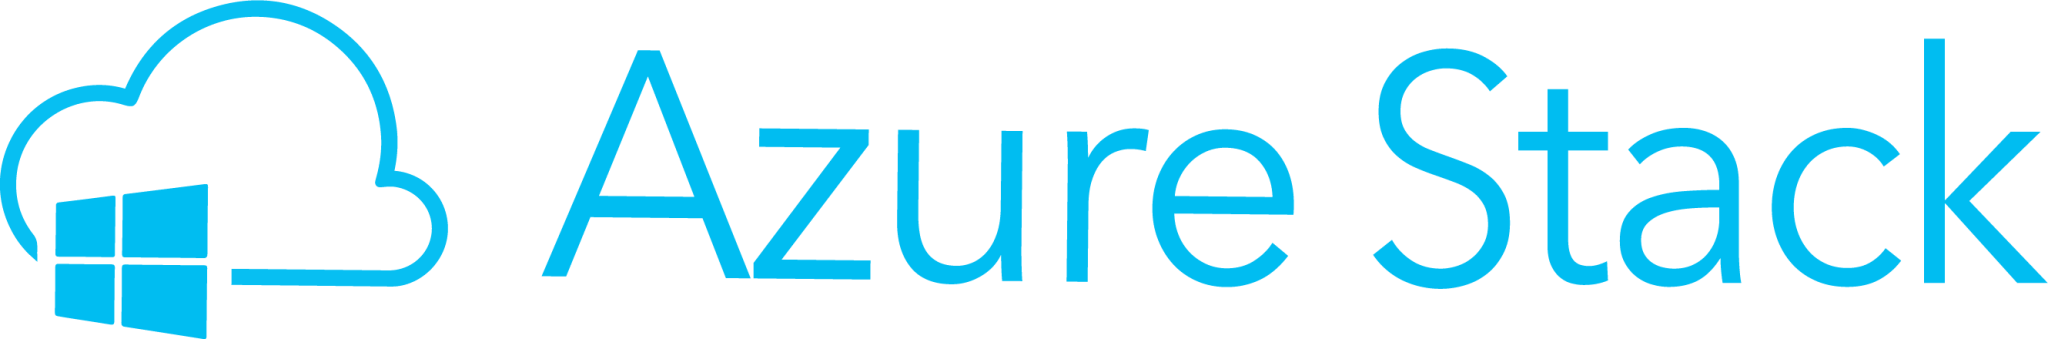 Azure Stack Logo